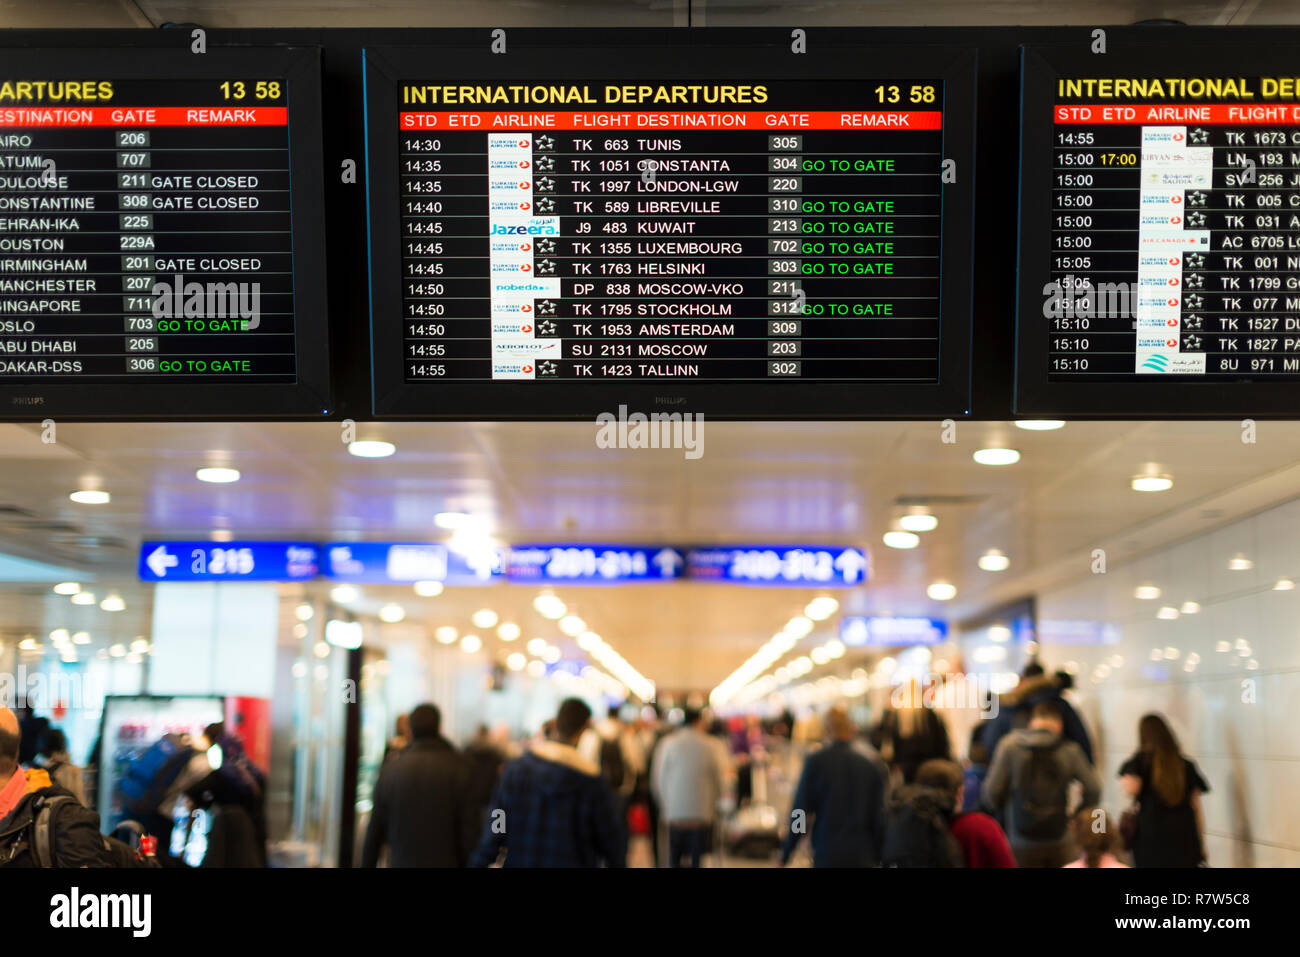 Аэропорт стамбула новый табло вылета сегодня международные. Аэропорт Ататюрк Стамбул. Схема аэропорта Стамбула ist. Аэропорт Ататюрк Стамбул 2020. Аэропорт Стамбула табло.